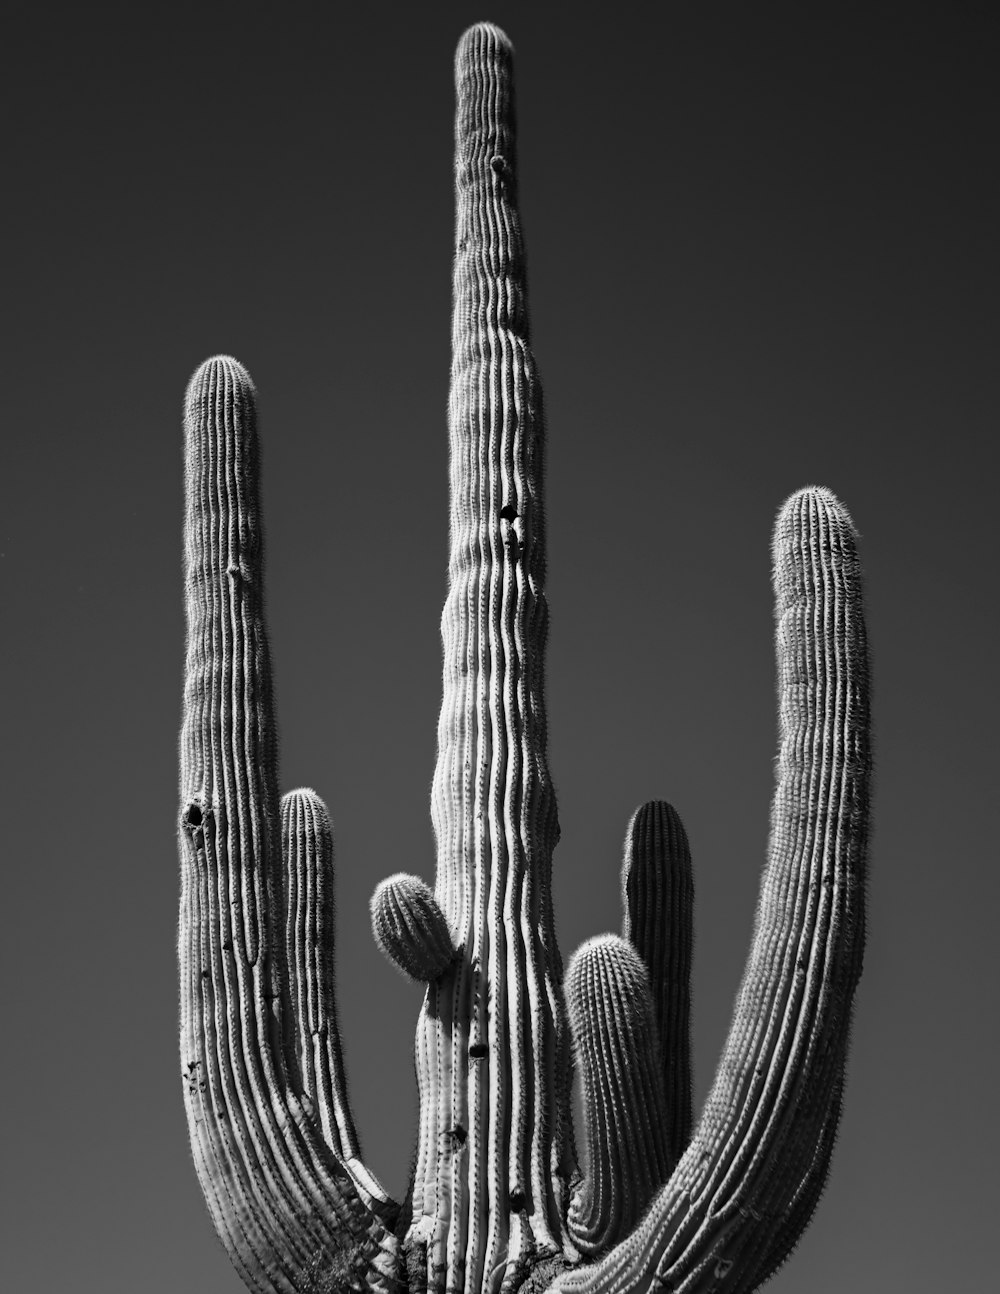 Une photo en noir et blanc d’un grand cactus